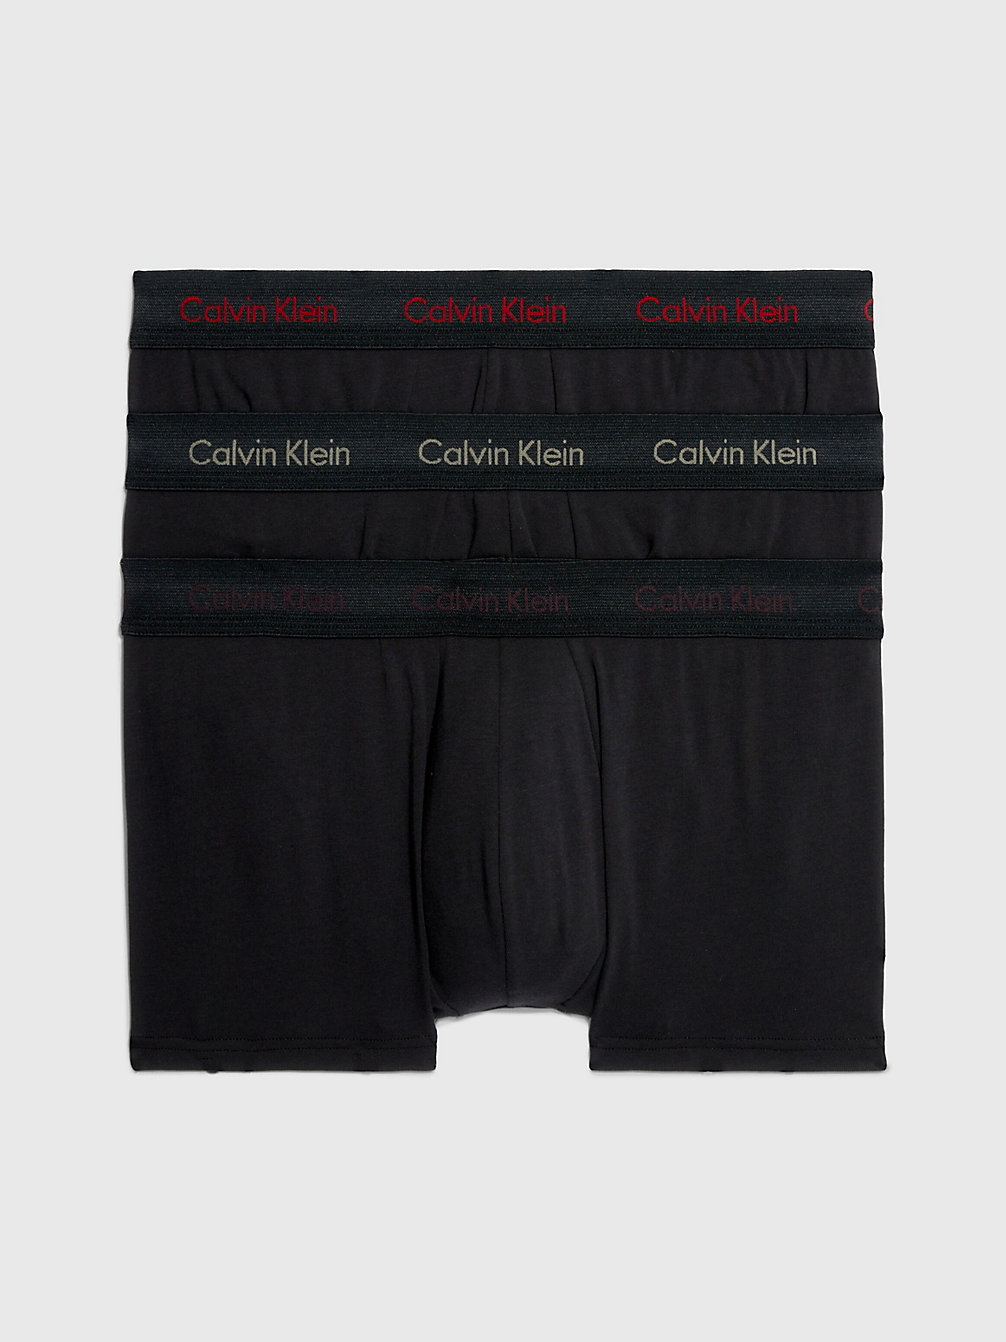 B-PWR PLM, FUSC BRY, ELEMENT HTR LG Lot De 3 Boxers Taille Basse - Cotton Stretch undefined hommes Calvin Klein